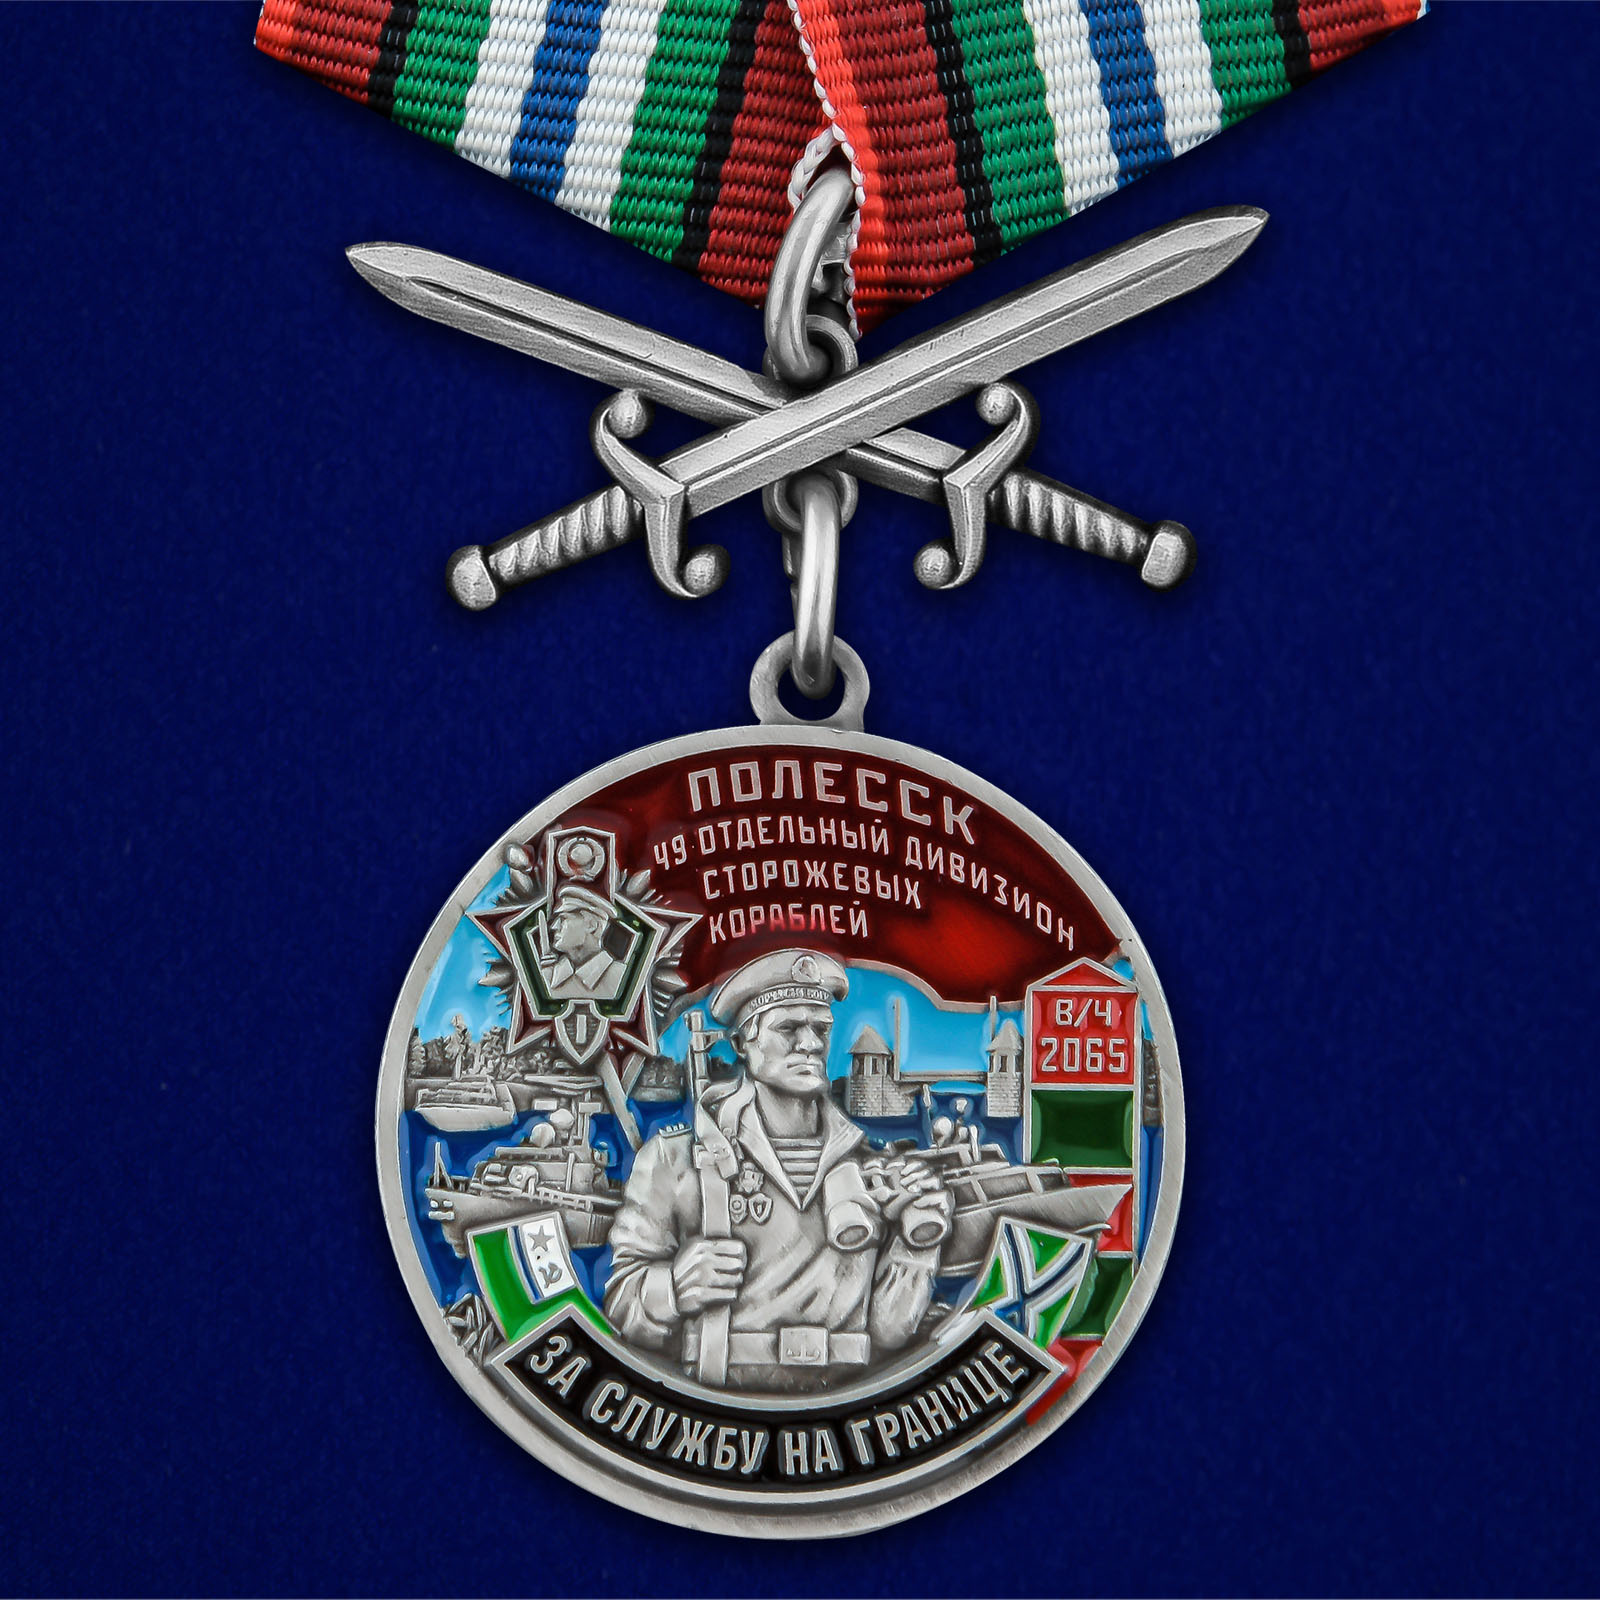 Купить медаль За службу в 49-ом ОДнПСКР Полесск в футляре с удостоверением выгодно